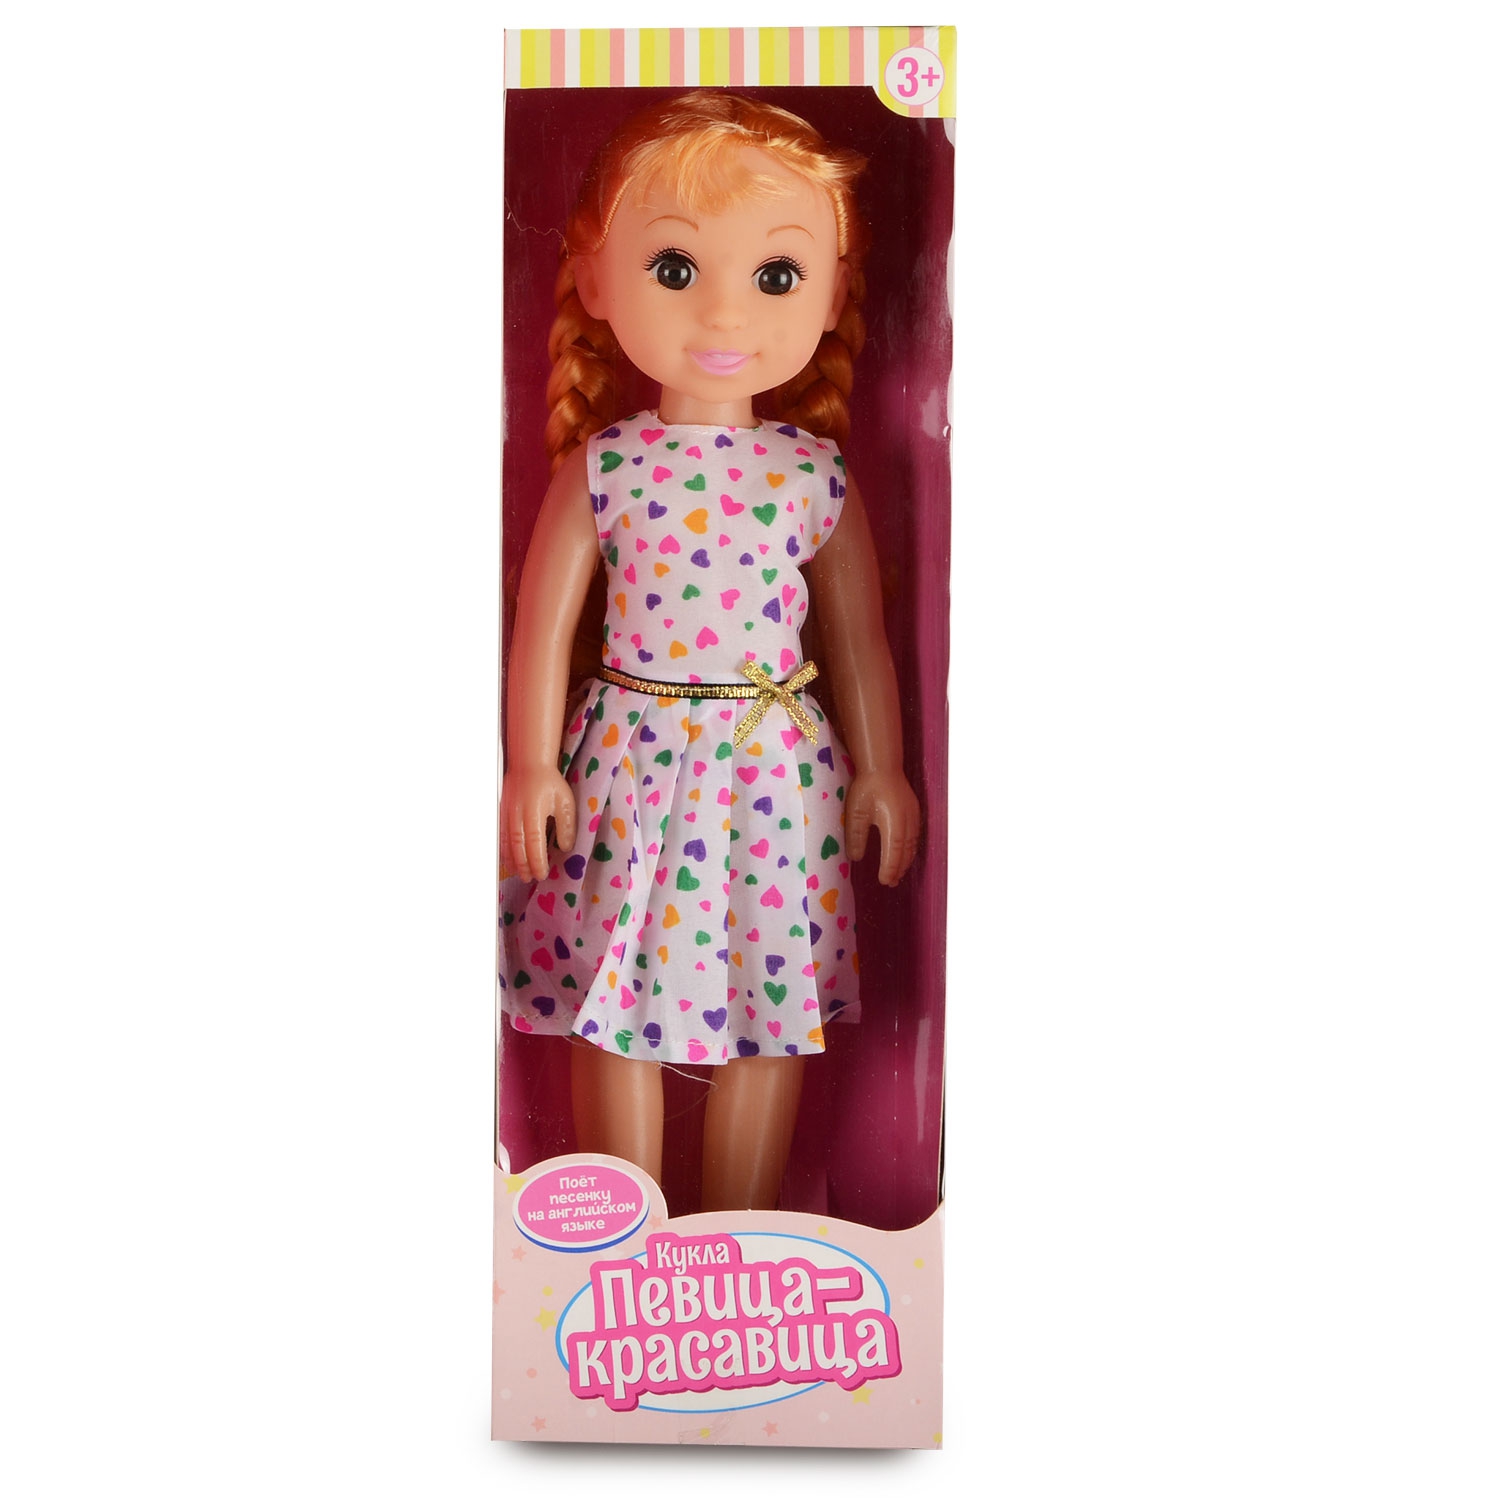 Кукла Певица-красавица (31 см, поёт на англ. яз., в ассорт.) (Вид 1)